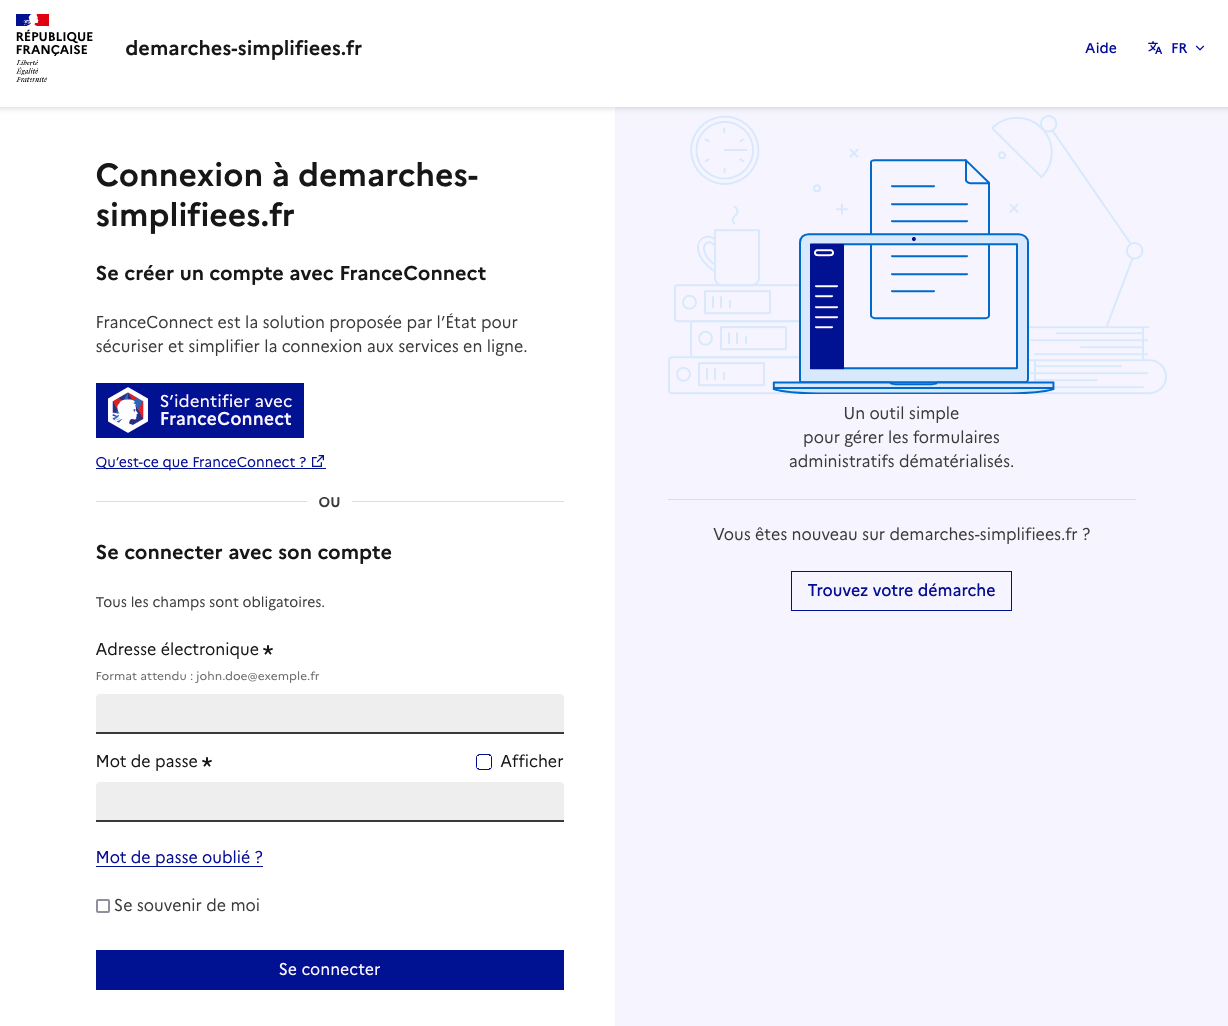 La page de connexion de demarches-simplifiees.fr